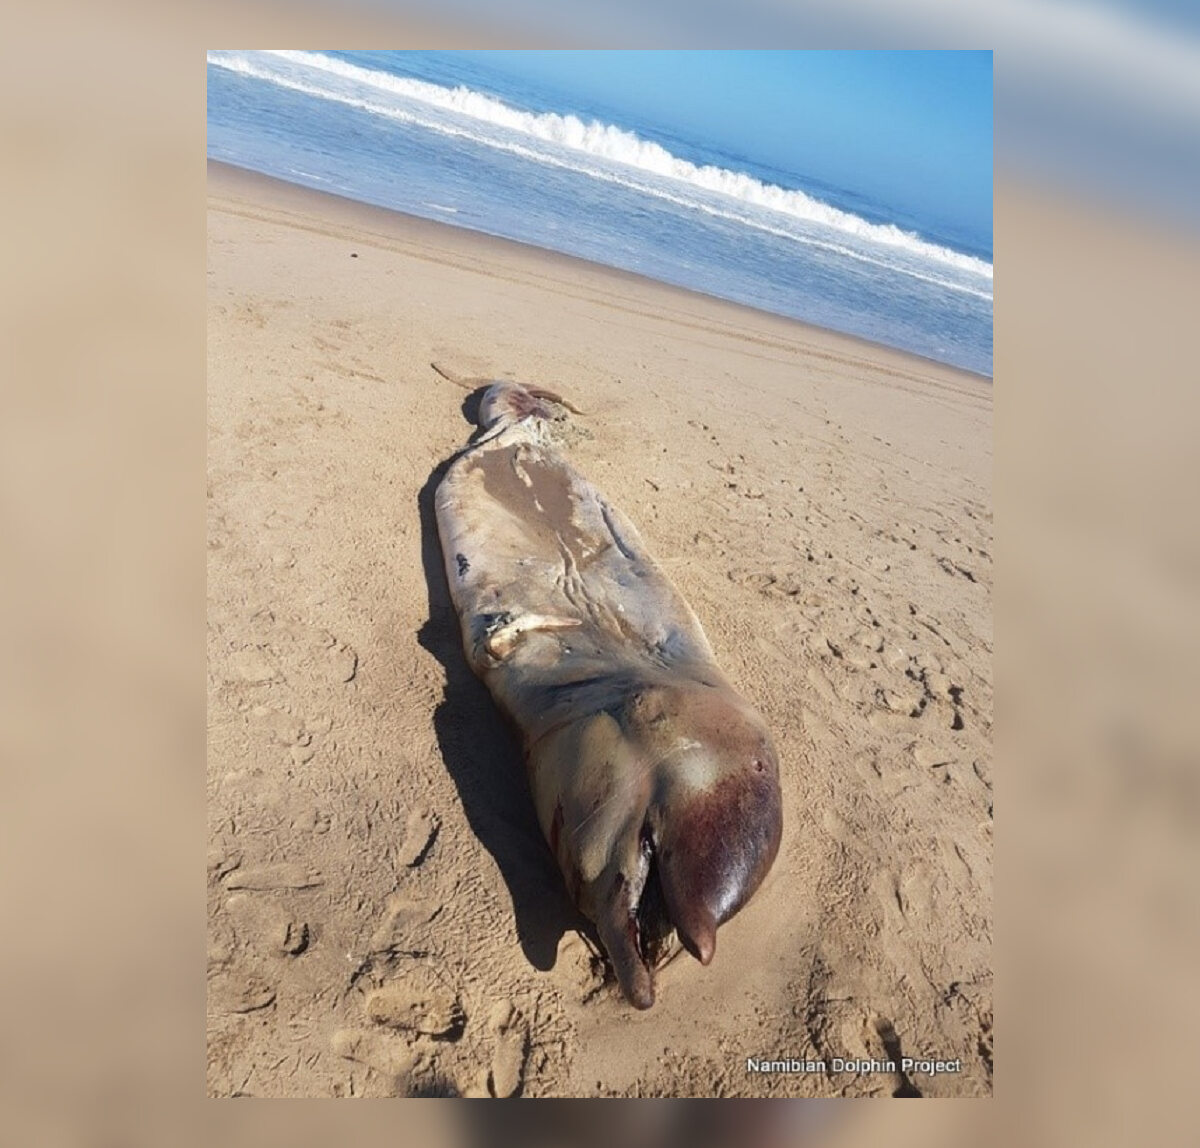 Spłaszczone truchło W ubiegłym tygodniu na plaży w Namibii naukowcy z Namibian Dolphin Project znaleźli dziwne, liczące 6 metrów rozkładające się zwłoki. Badacze od razu zadali sobie pytanie: Gdzie są kości? Tajemnicze zwierze zostało później zidentyfikowane jako rzadki rodzaj żyjącego głęboko w morzu wieloryba, który ostatnio widziany był w 2000 roku.